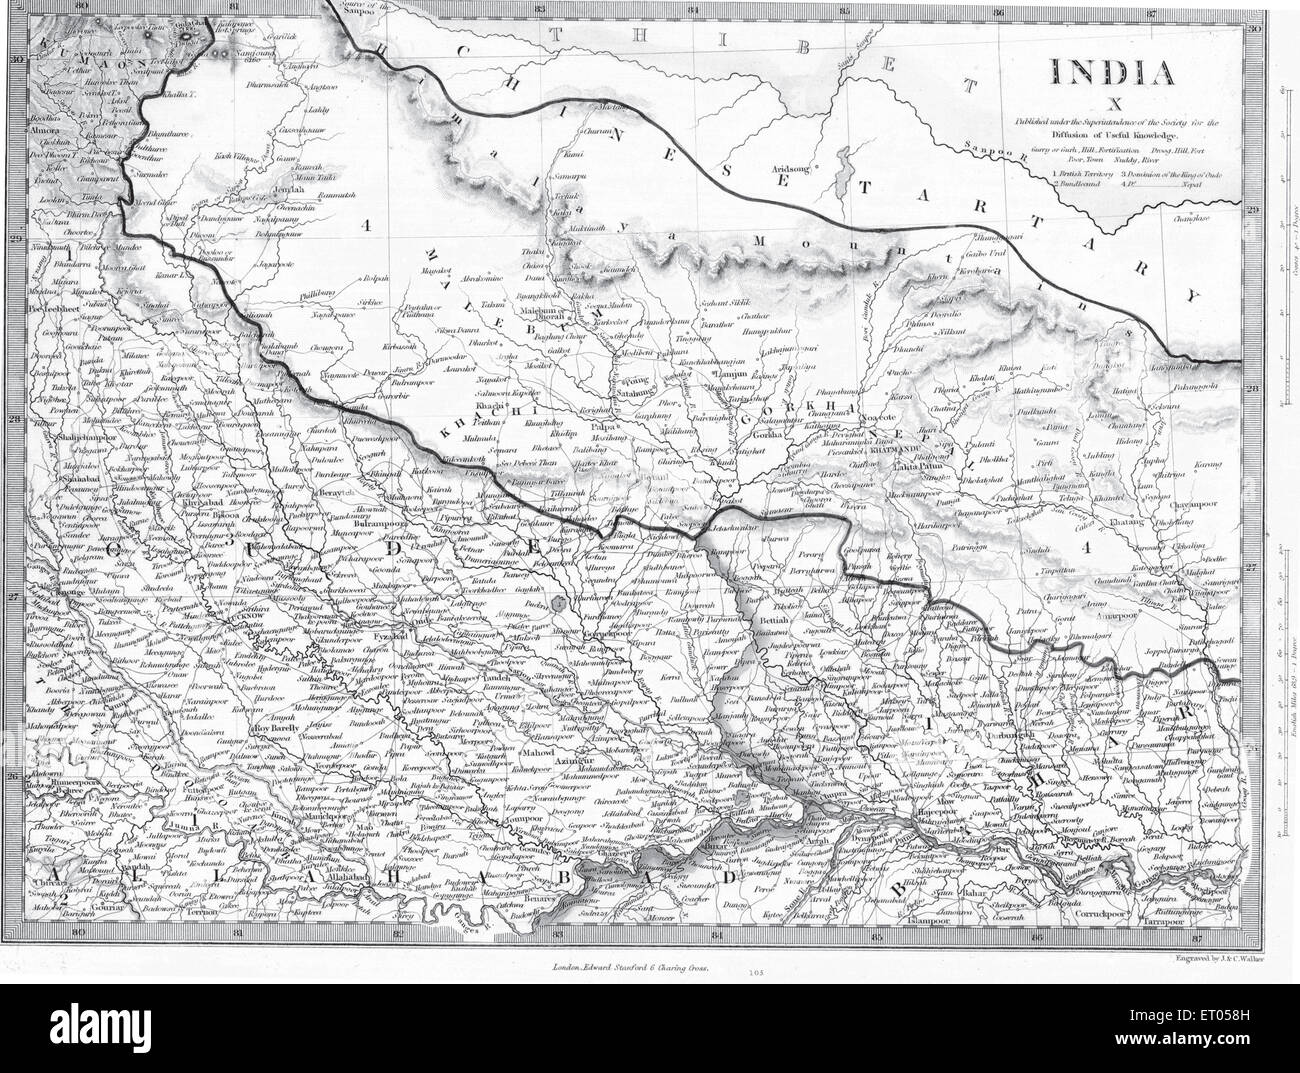 Une carte de l'Inde pour la diffusion de connaissances utiles Banque D'Images